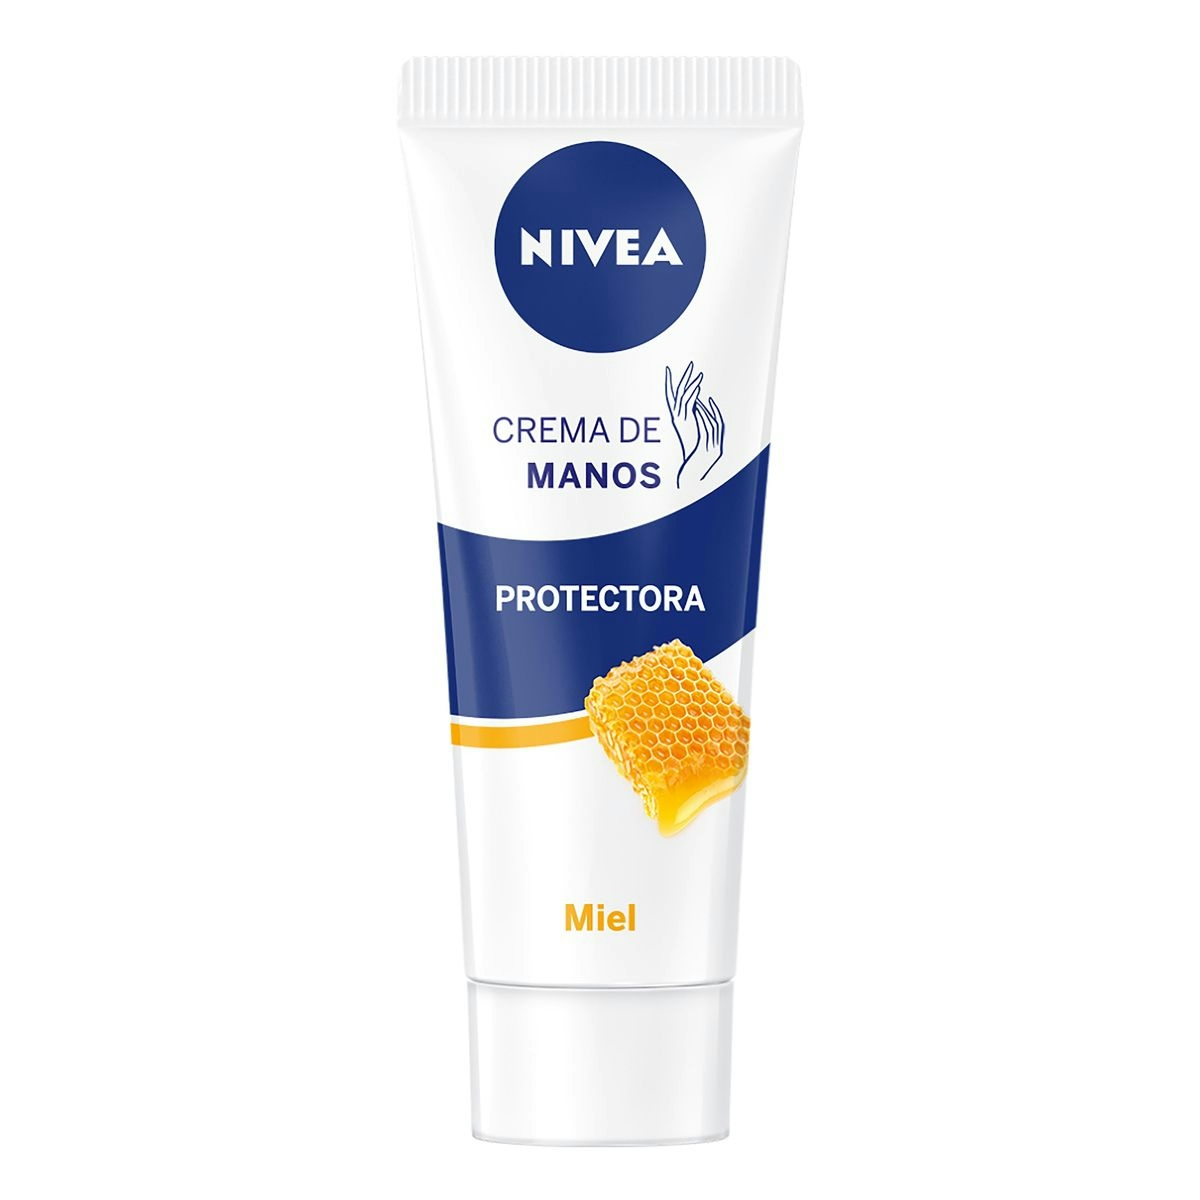 Crema de manos NIVEA protectora con miel tubo 100 ml